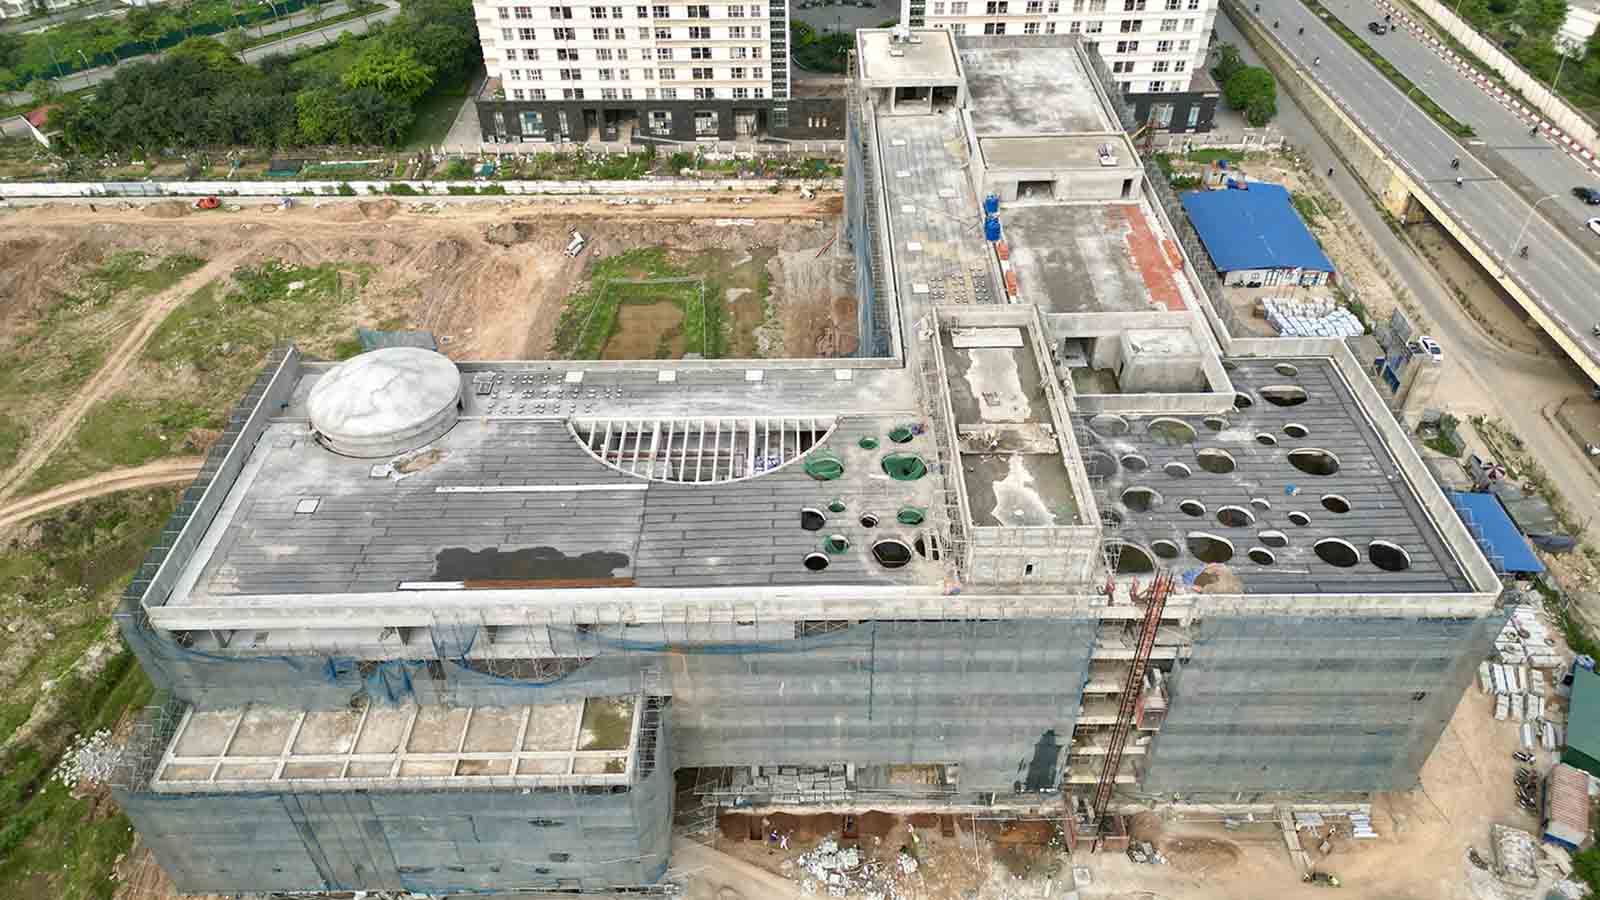 Bệnh viện Nhi Hà Nội gồm 1 khối nhà cao 6 tầng có 2 đơn nguyên (1A và 1B). Ảnh: Hữu Chánh